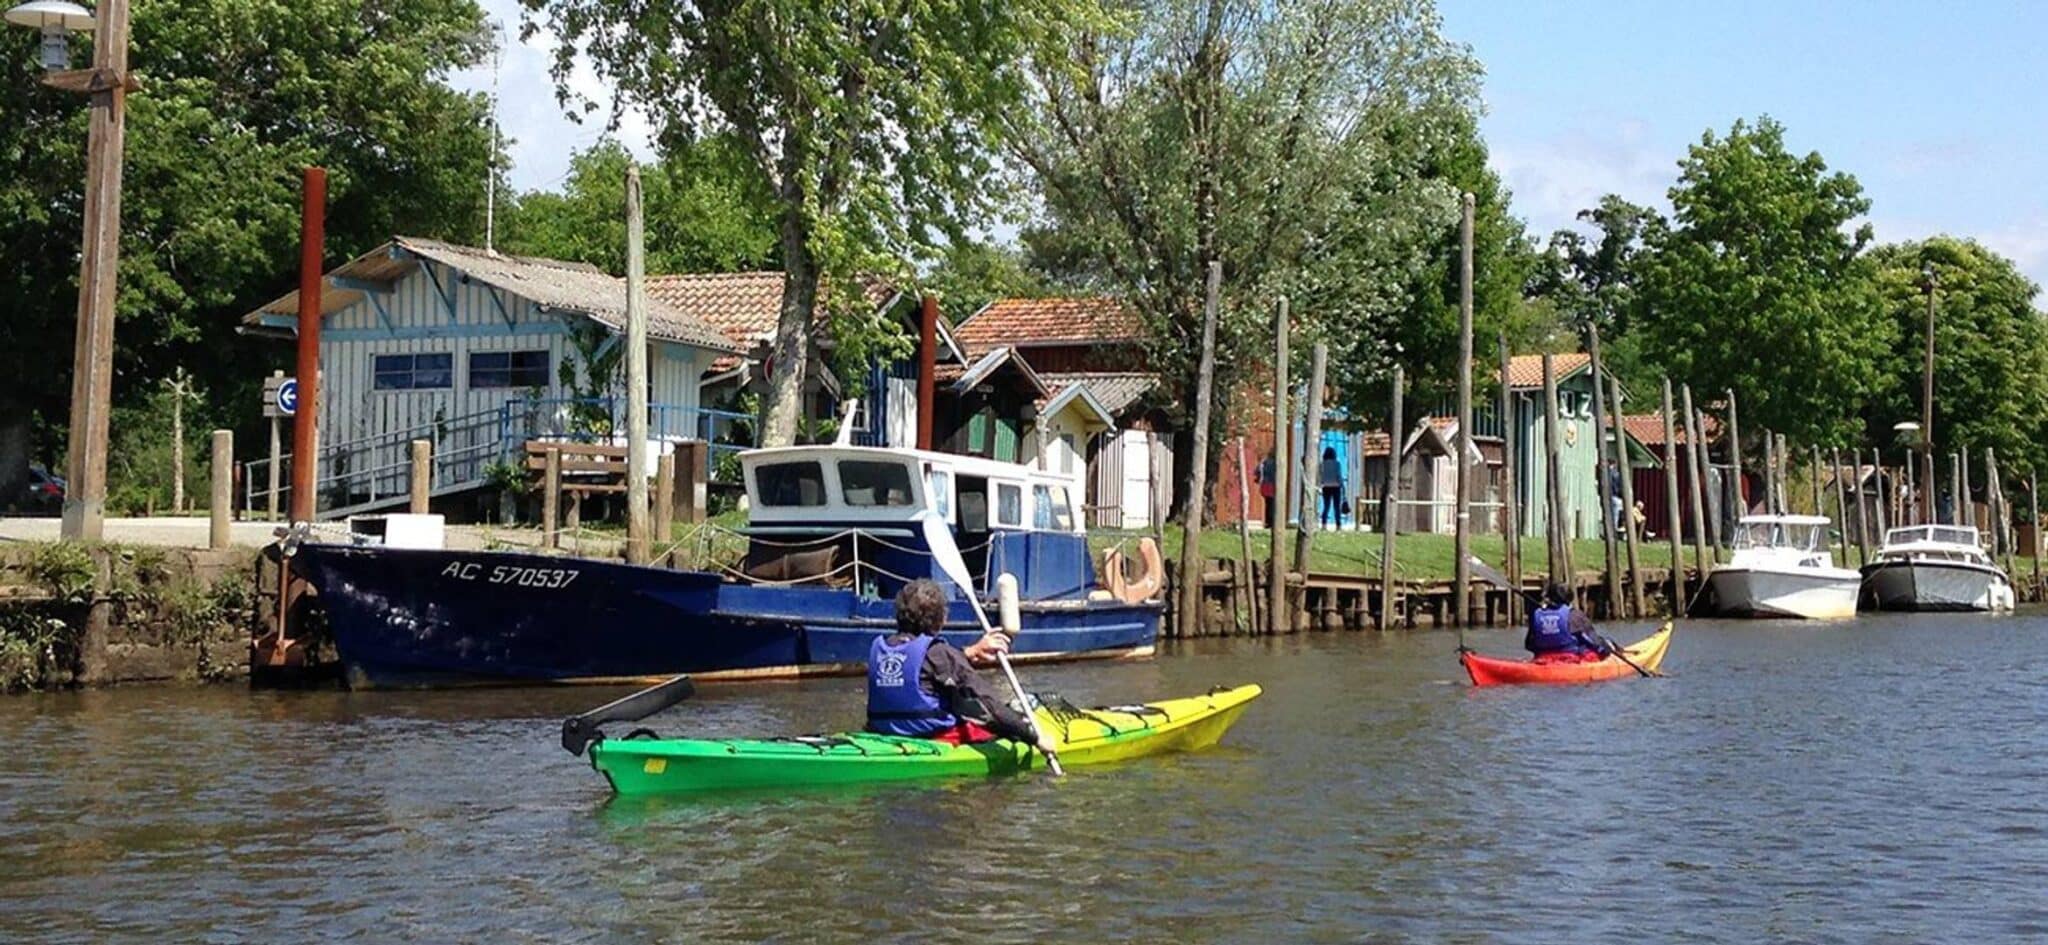 Descente de canoë-kayak de la Leyre au Bassin d'Arcachon